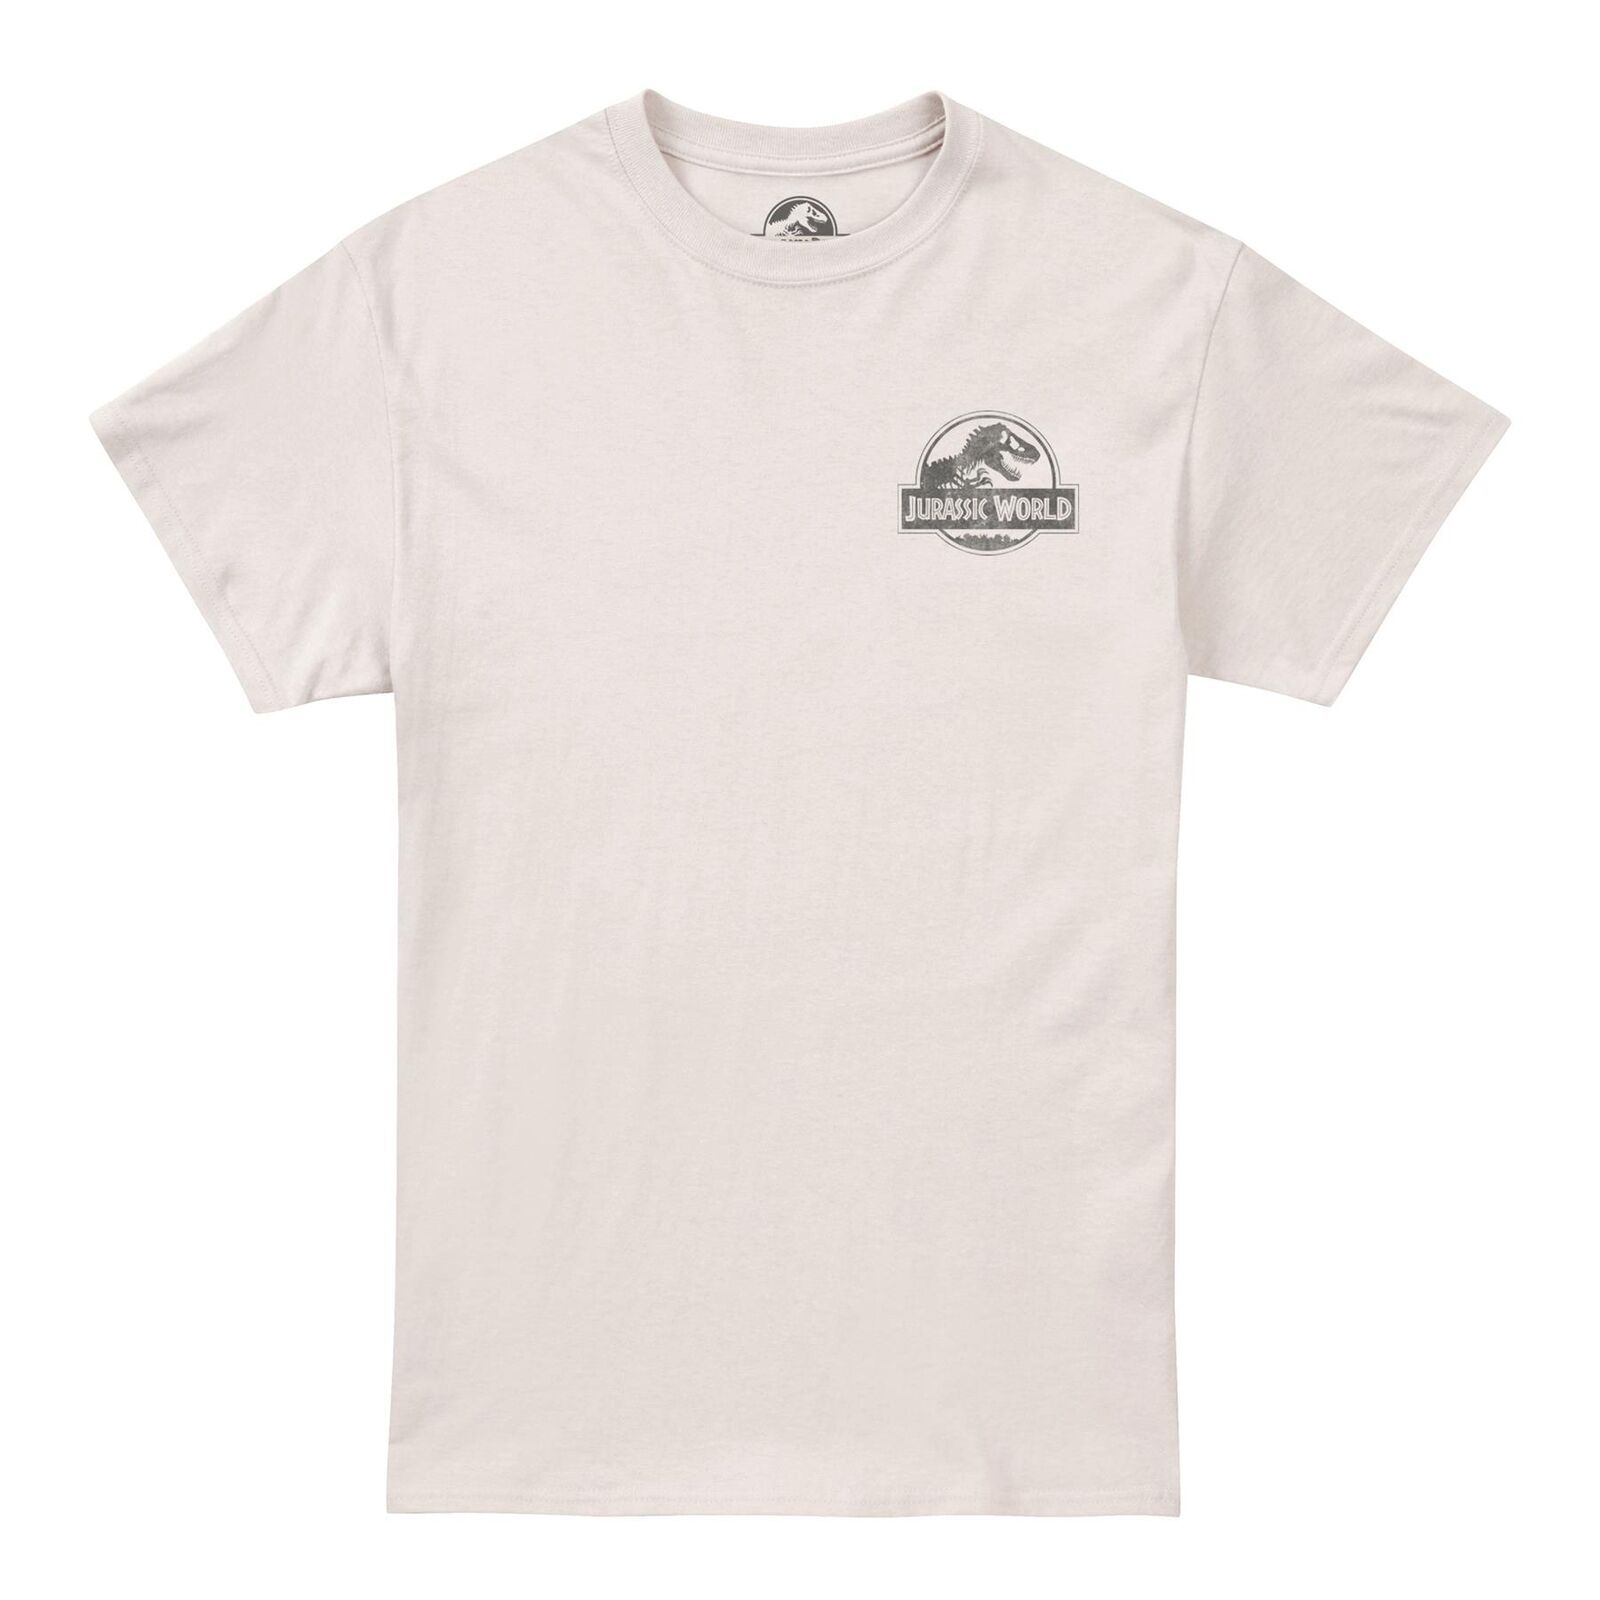 (ジュラシック パーク) Jurassic Park オフィシャル商品 メンズ Greetings Tシャツ ロゴ 半袖 トップス 【海外通販】